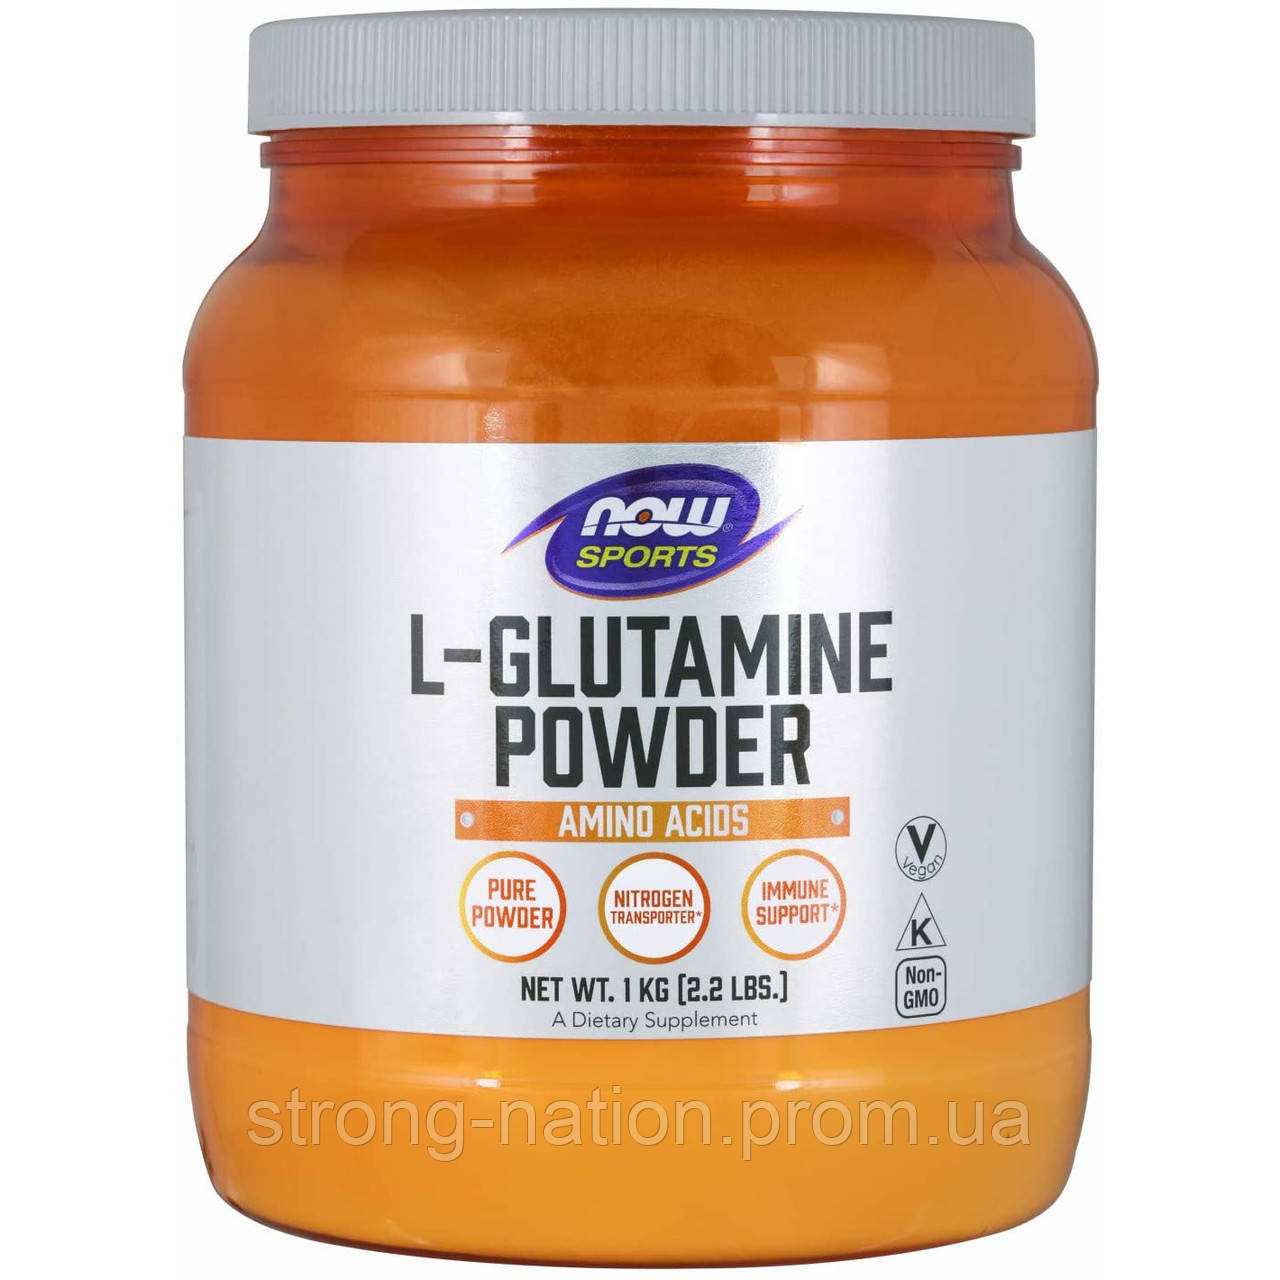 L-Glutamine Powder 1000 g, Now Foods, Глютамин